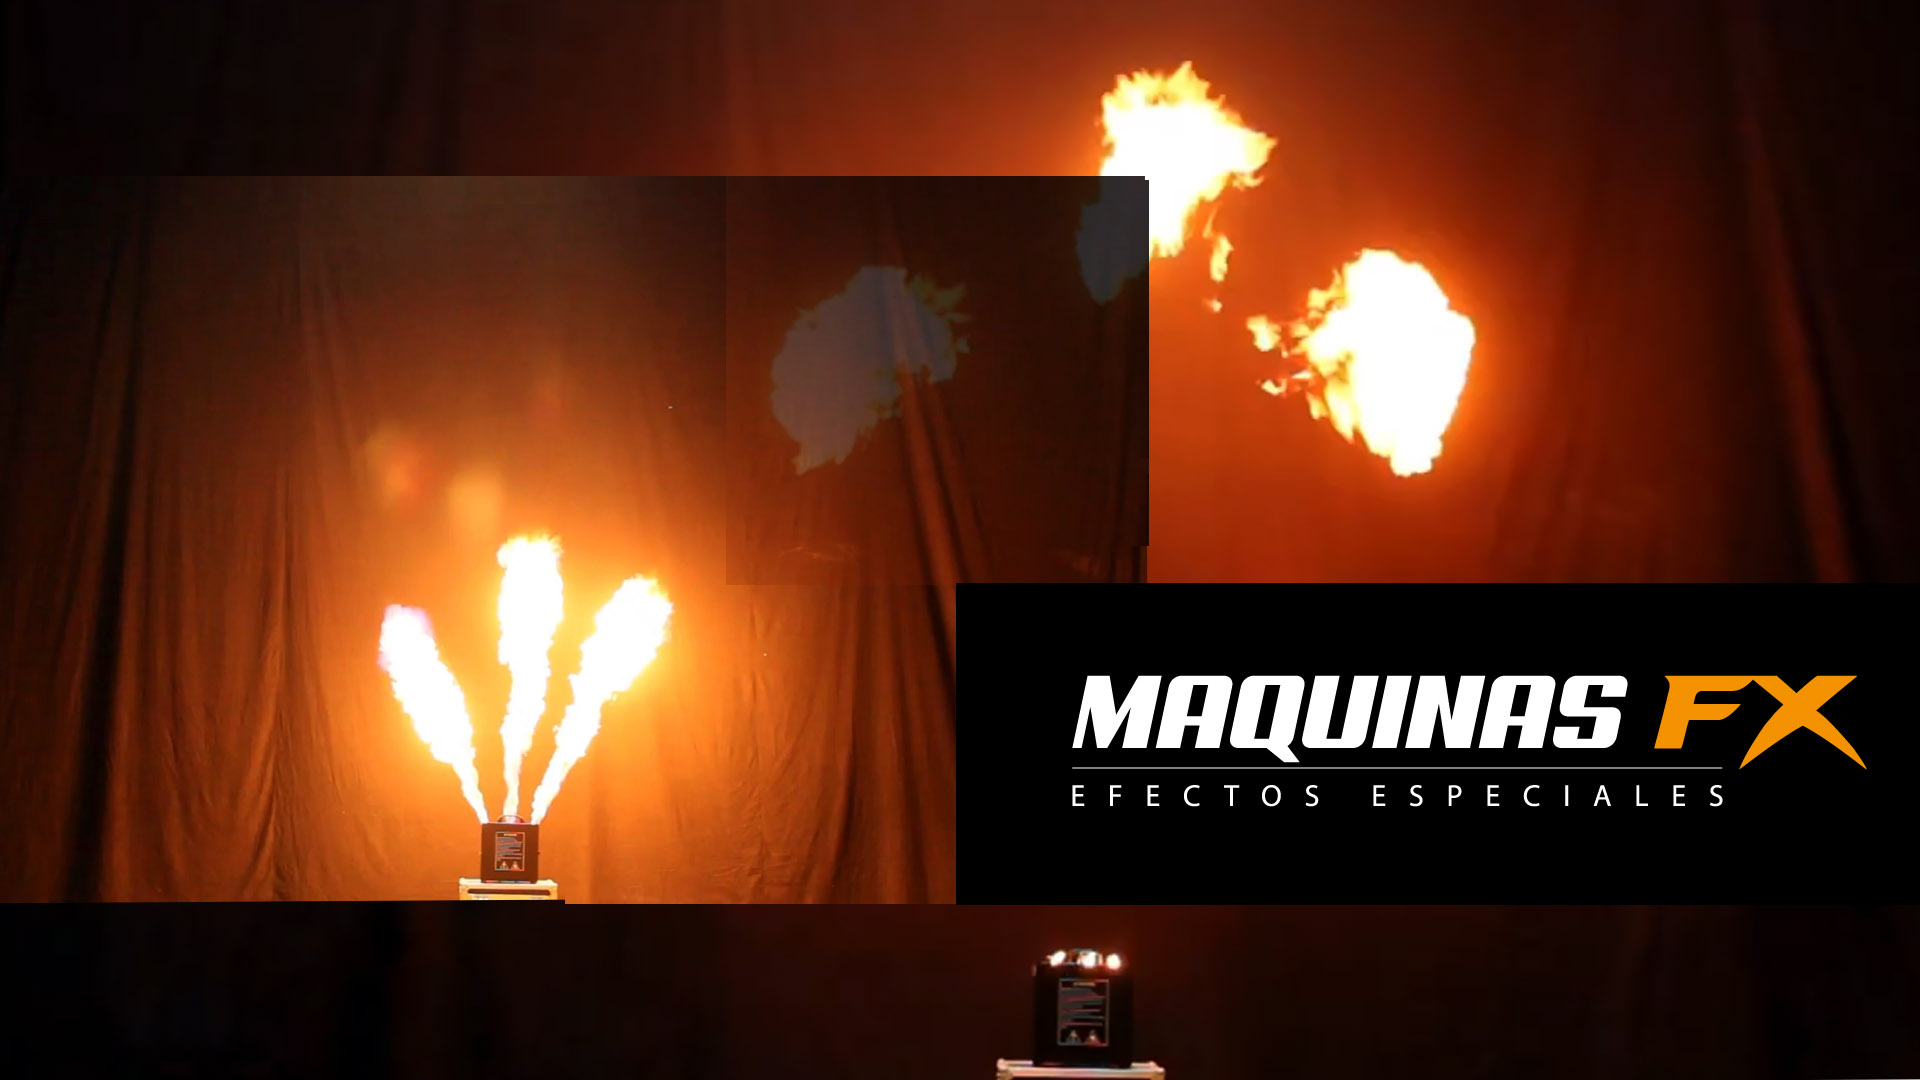 Máquina de fuego, Lanzallamas Triple Flame Pro - Máquinas FX, Efectos Especiales